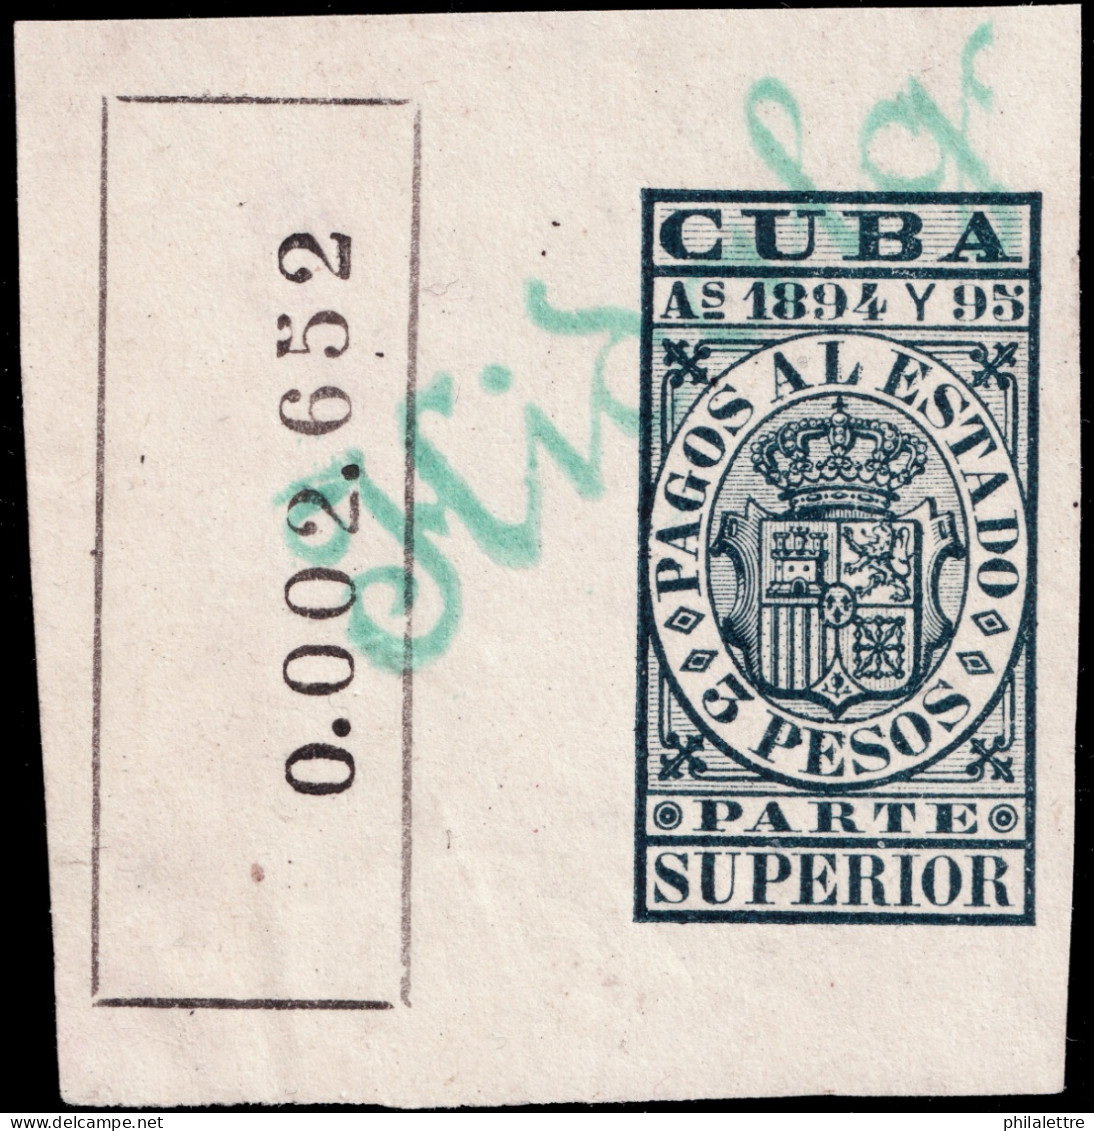 ESPAGNE / ESPANA - COLONIAS (Cuba) 1894/95 "PAGOS AL ESTADO" Fulcher 1142 3P Parte Superior Usado (0.002.652) - Kuba (1874-1898)